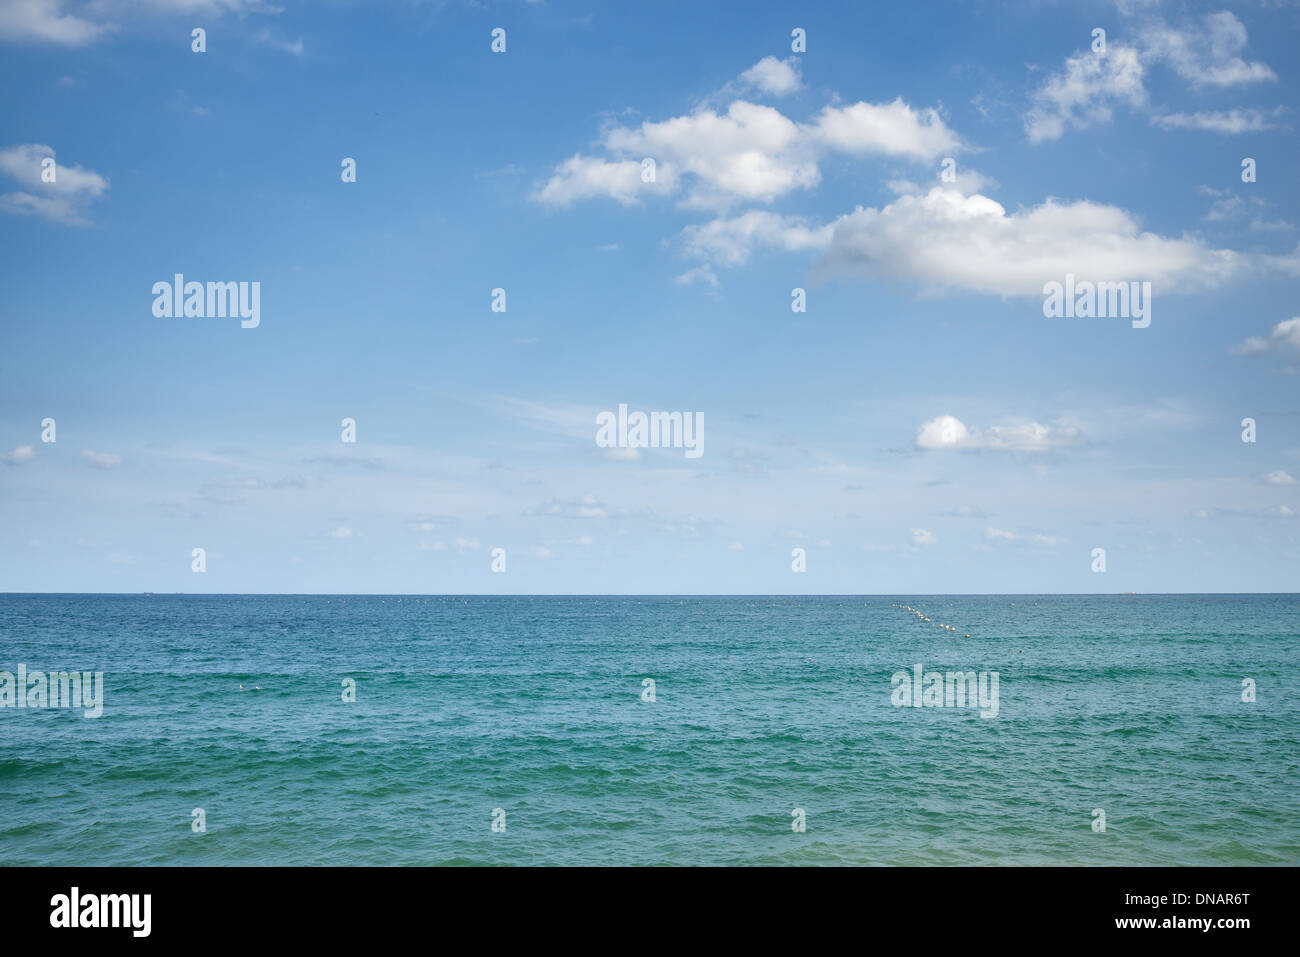 Mar en calma y el cielo azul claro con algunas nubes Foto de stock